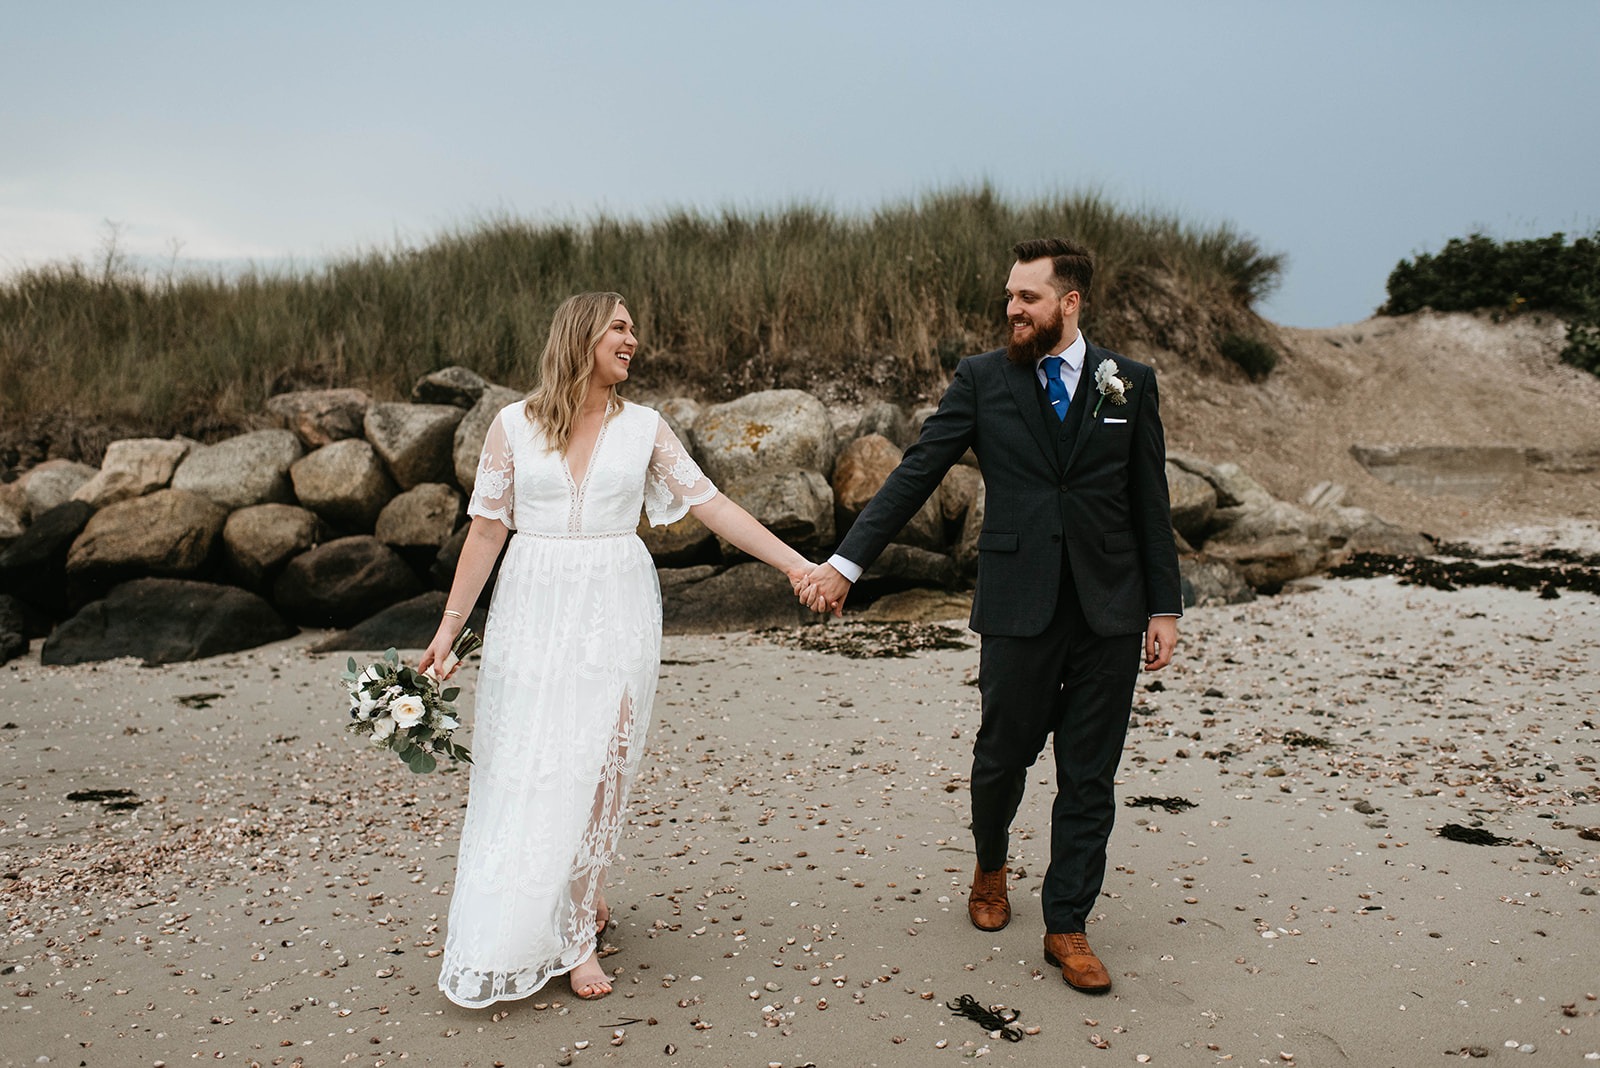 bride and groom walking on beach